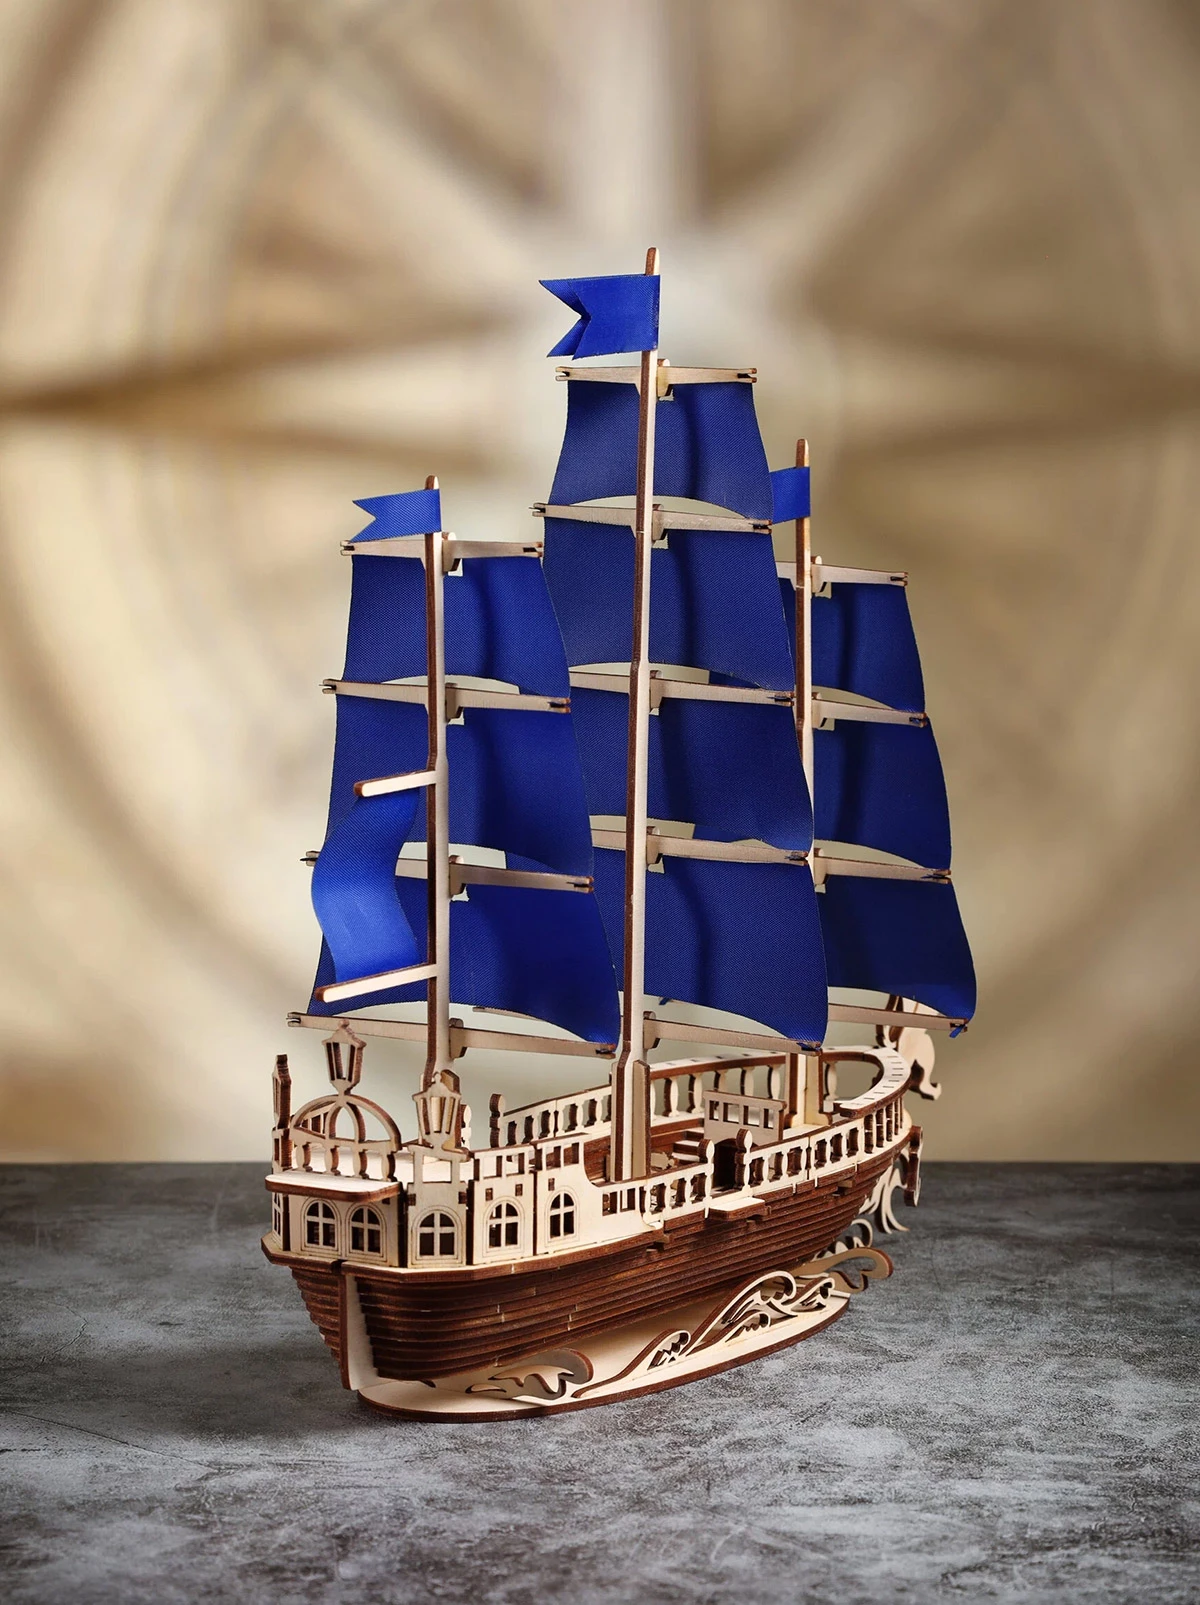 <p>Сборная модель парусного корабля</p>

<p></p>